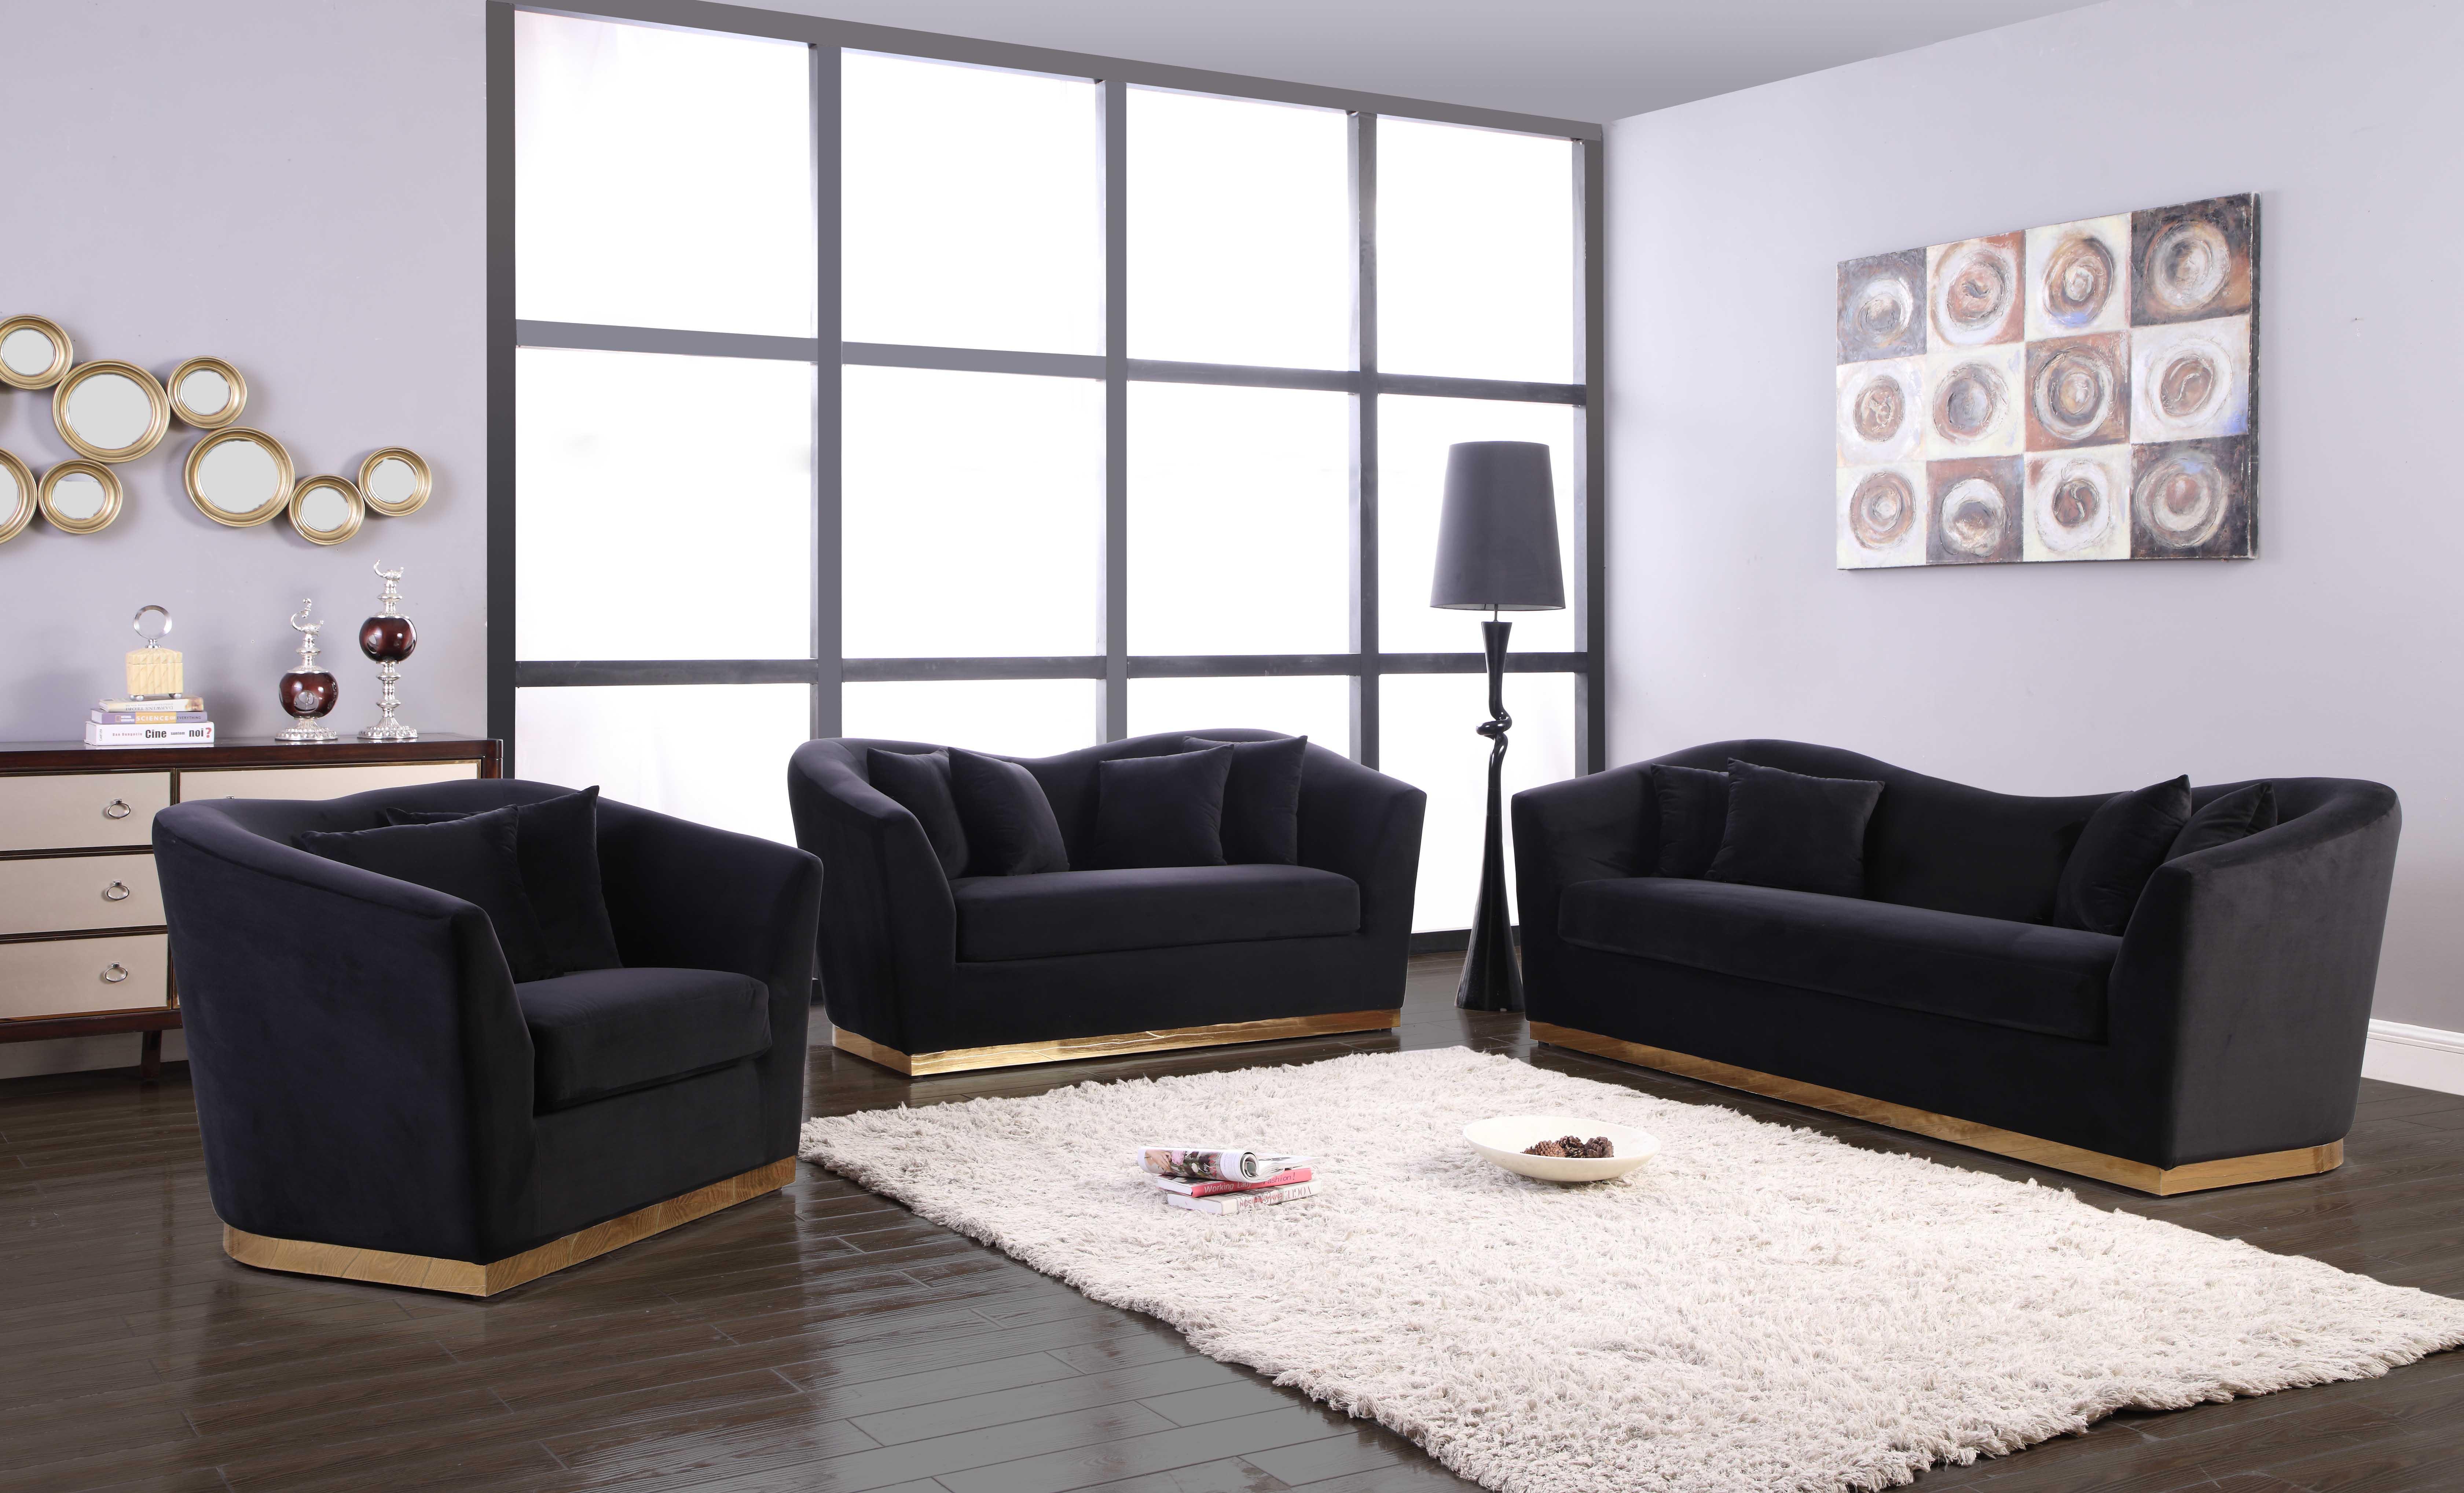 Contemporary, Modern Sofa Set Arabella 617Black-S-Set-3 617Black-S-Set-3 in Black Soft Velvet